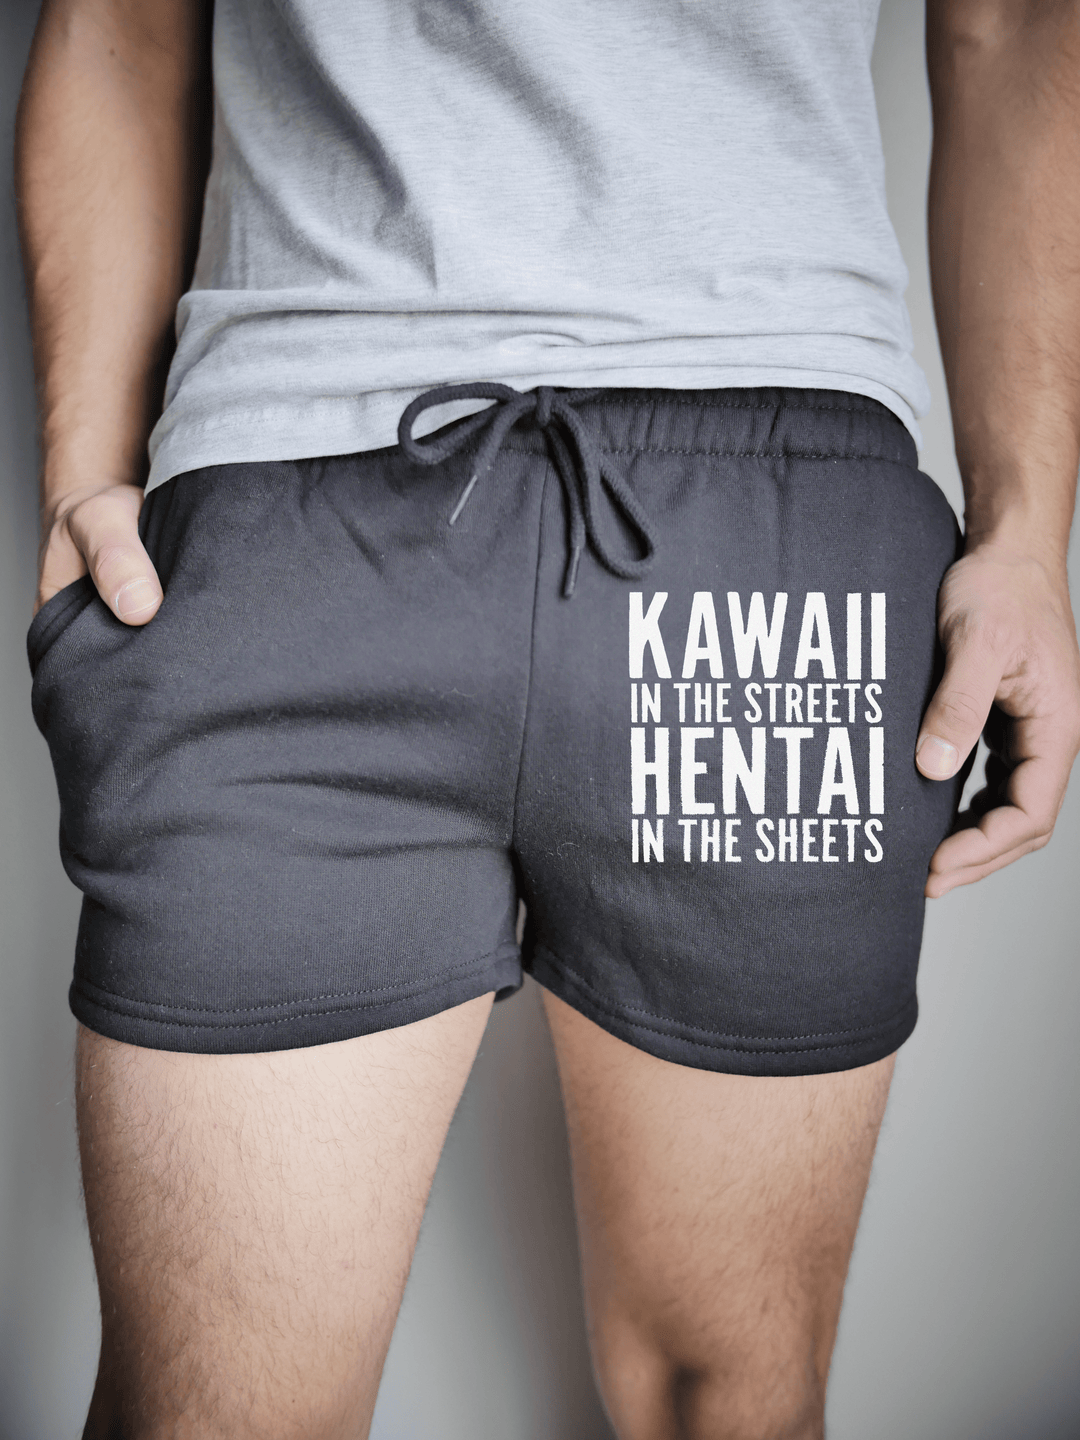 PixelThat Punderwear Shorts Black / S / Front Kawaii Hentai Men's Gym Shorts